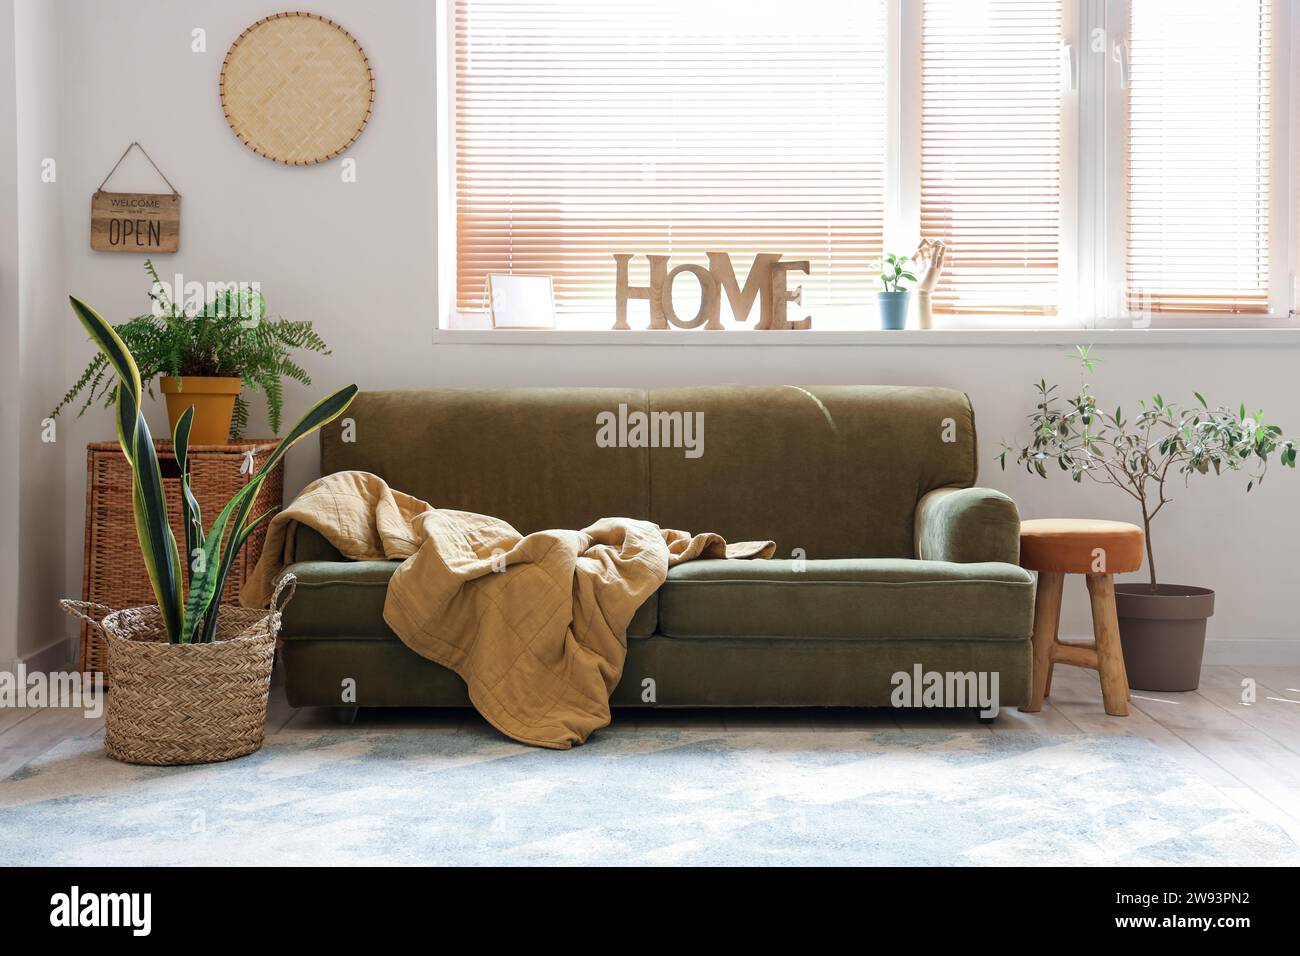 Intérieur de salon élégant avec canapé et plante d'intérieur en pot en osier Banque D'Images